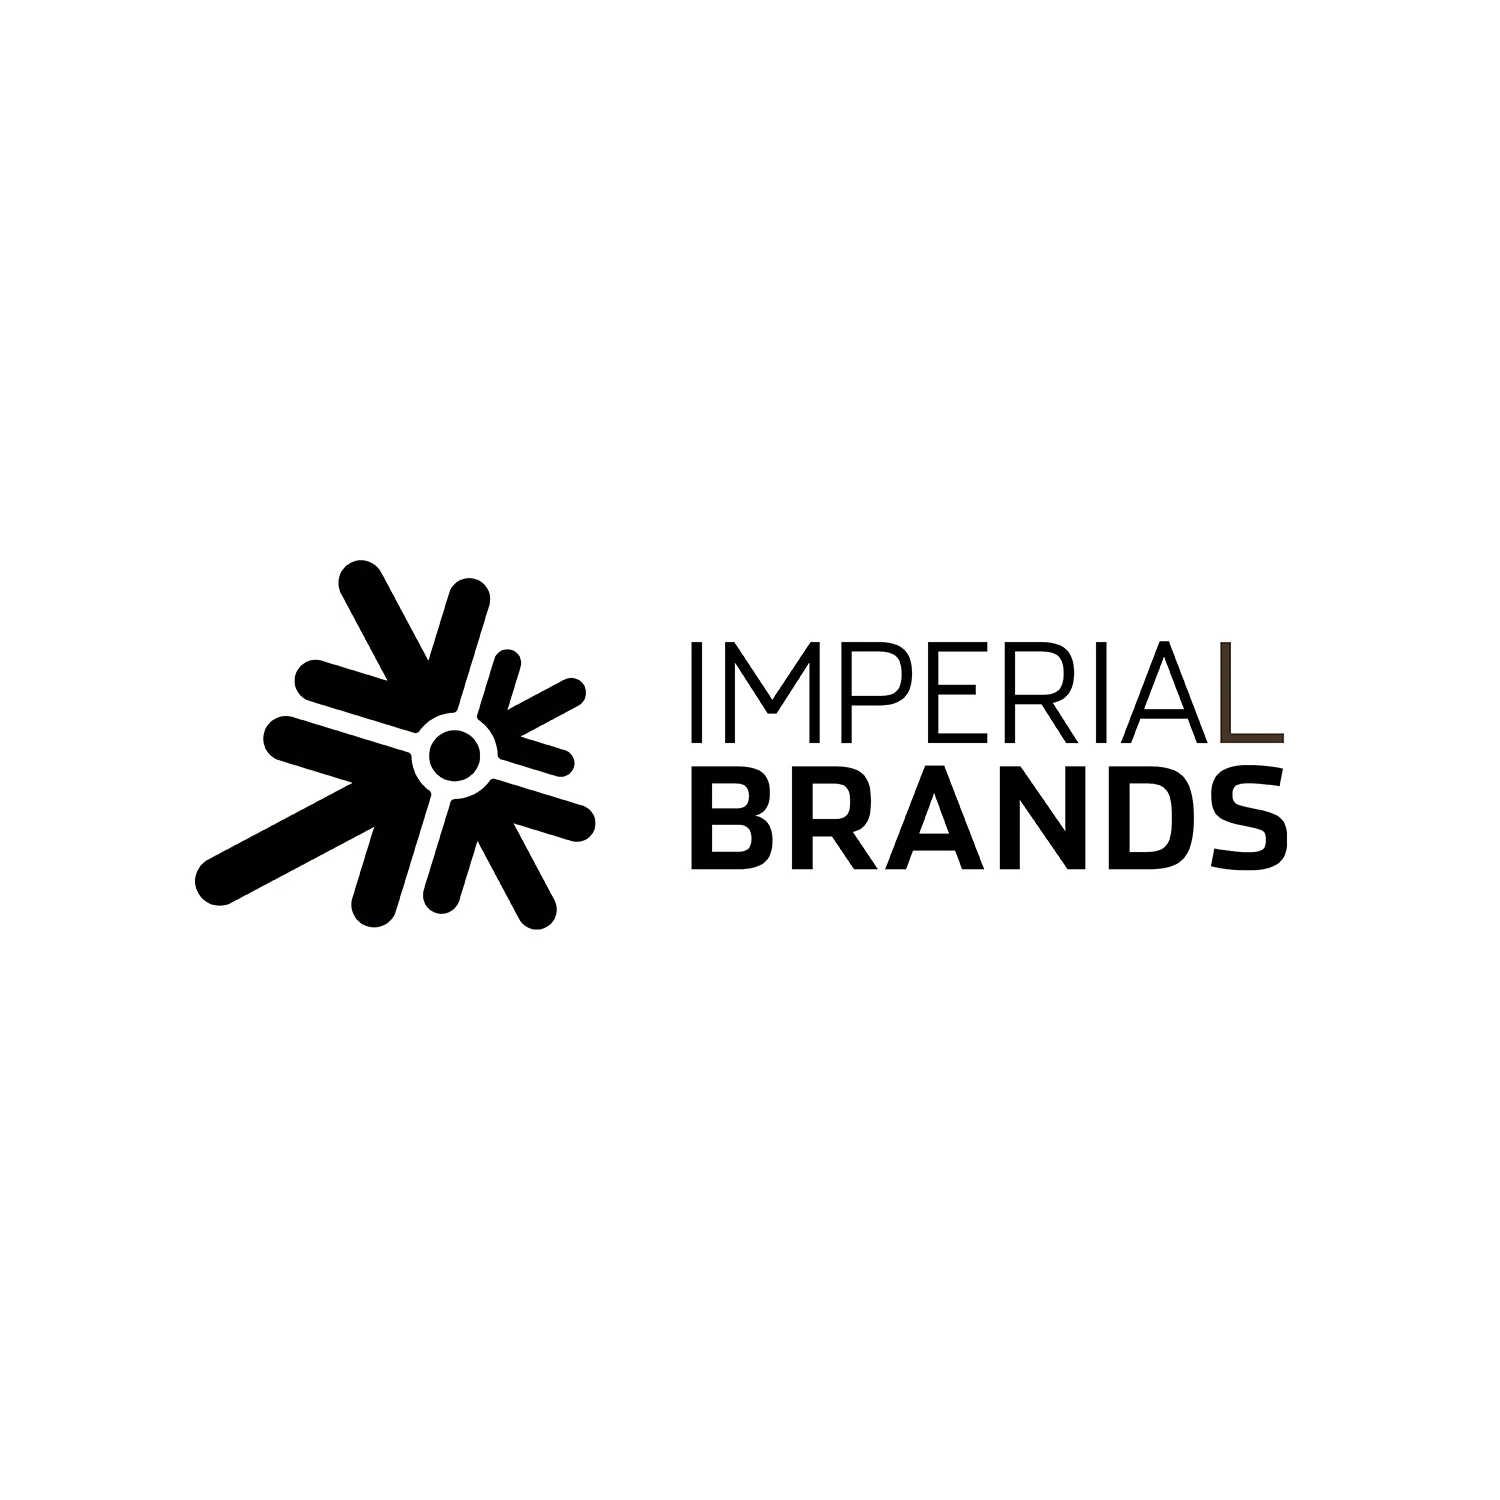 826-imperial-brands-logo-17011735211666.jpg